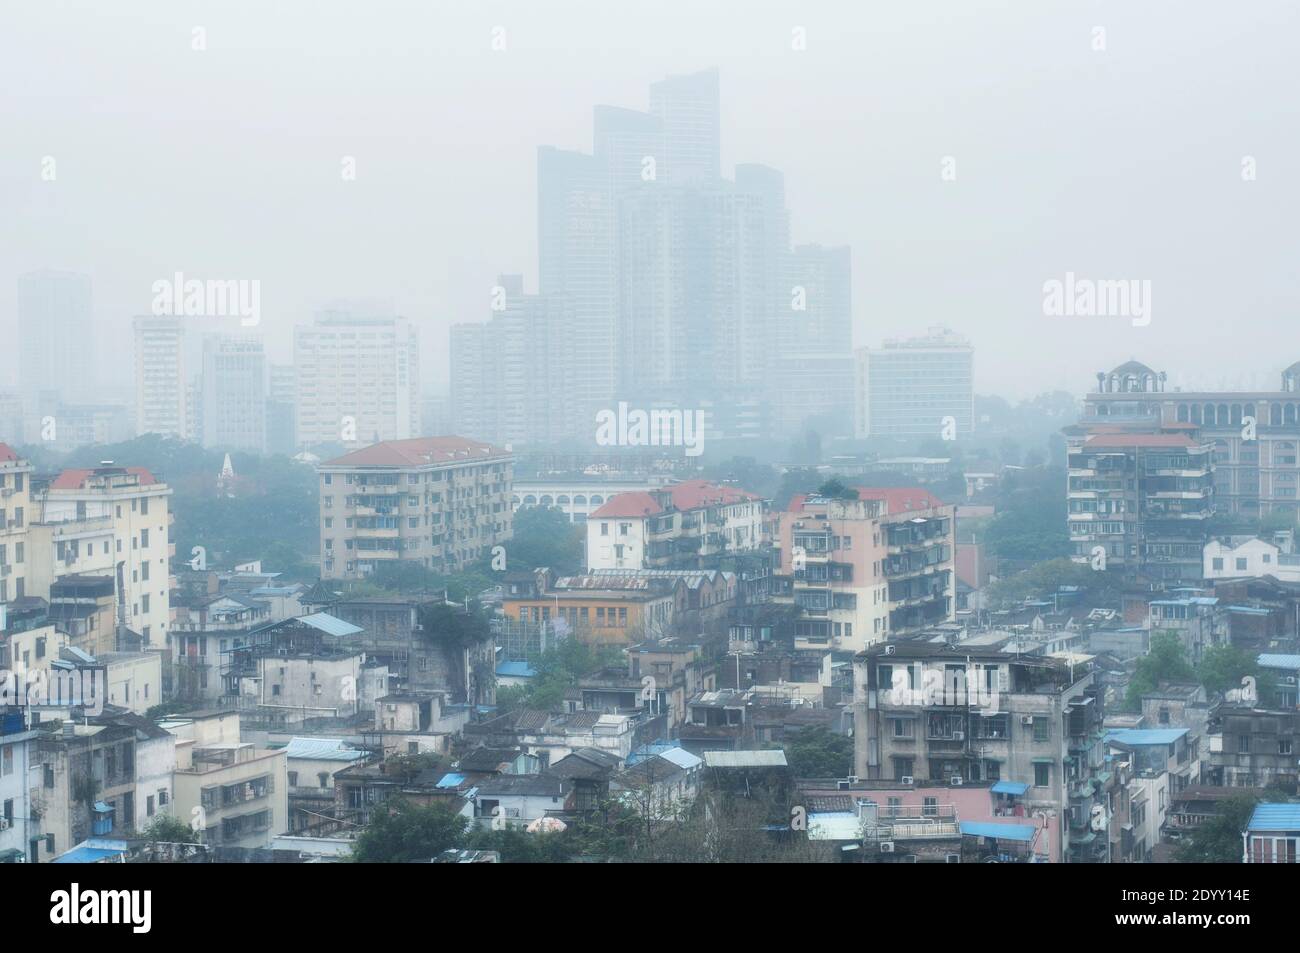 Les bâtiments et les appartements ont été altérés lors d'une journée de pluie brumeuse Shang Xia Jiu rue piétonne dans le quartier de Xiguan dans La ville de Guangzhou Chine en G. Banque D'Images